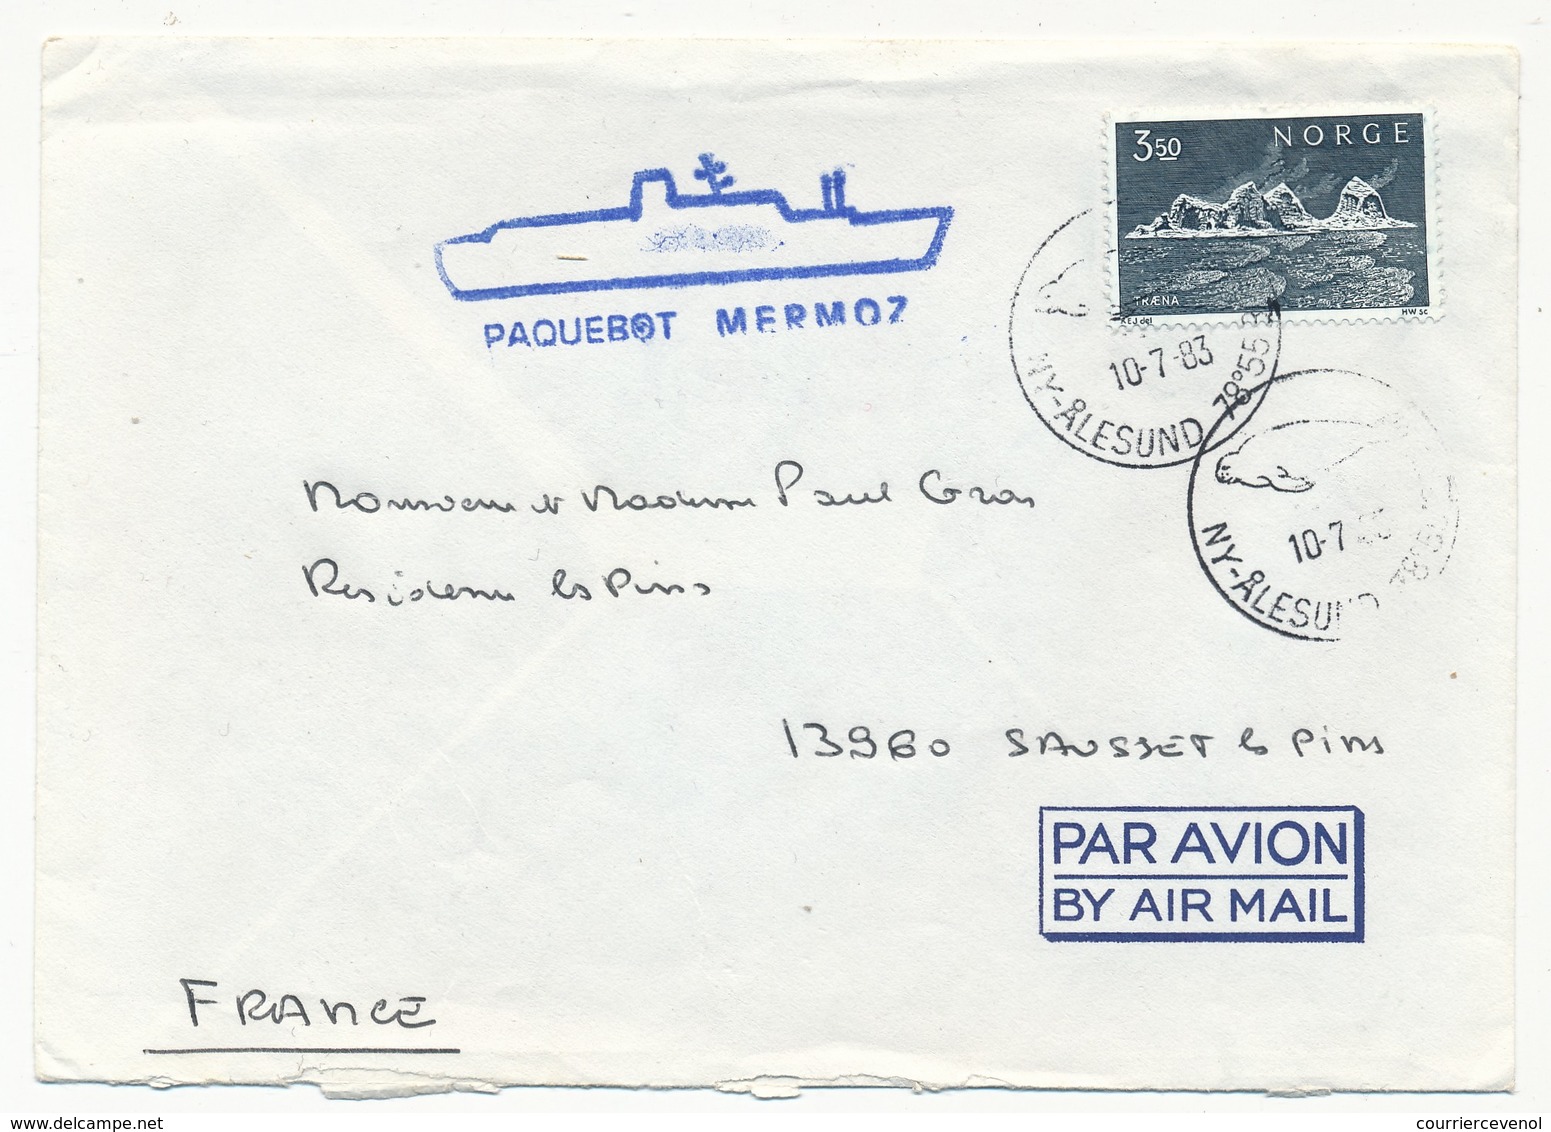 NORVEGE / FRANCE - Enveloppe Croisières Paquet - LY Ålesund (Norvège) 1983 Cachet "Paquebot Mermoz" - Poste Maritime